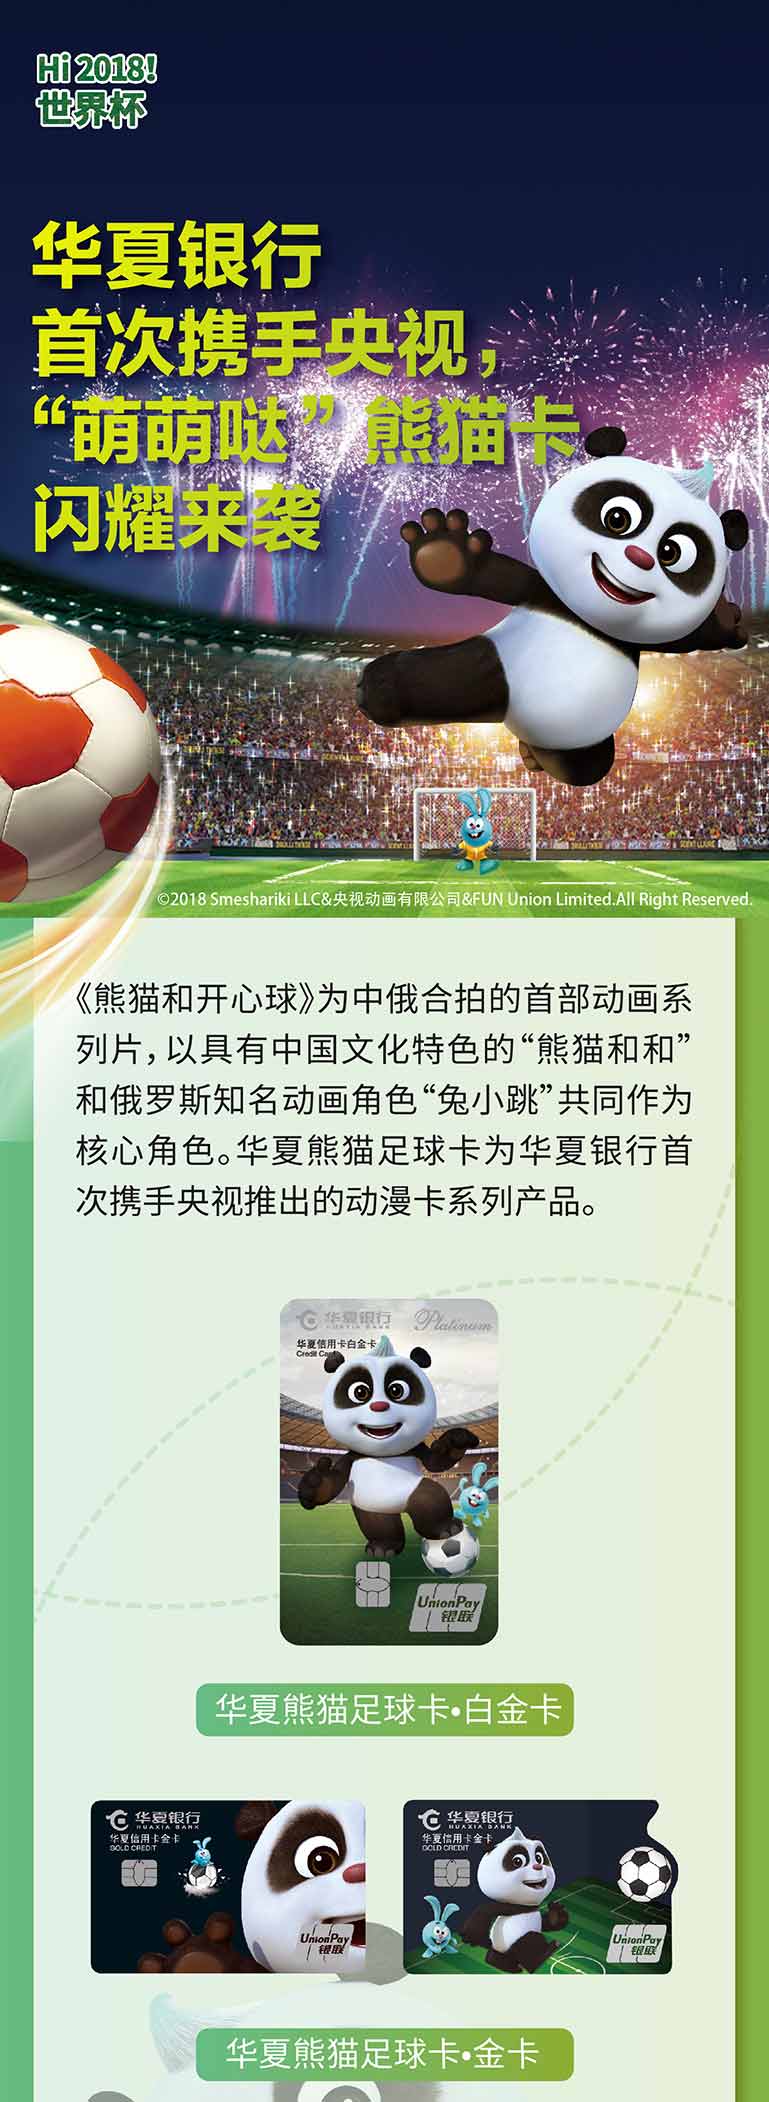 华夏银行首携手央视 推熊猫足球卡 新户办卡有好礼